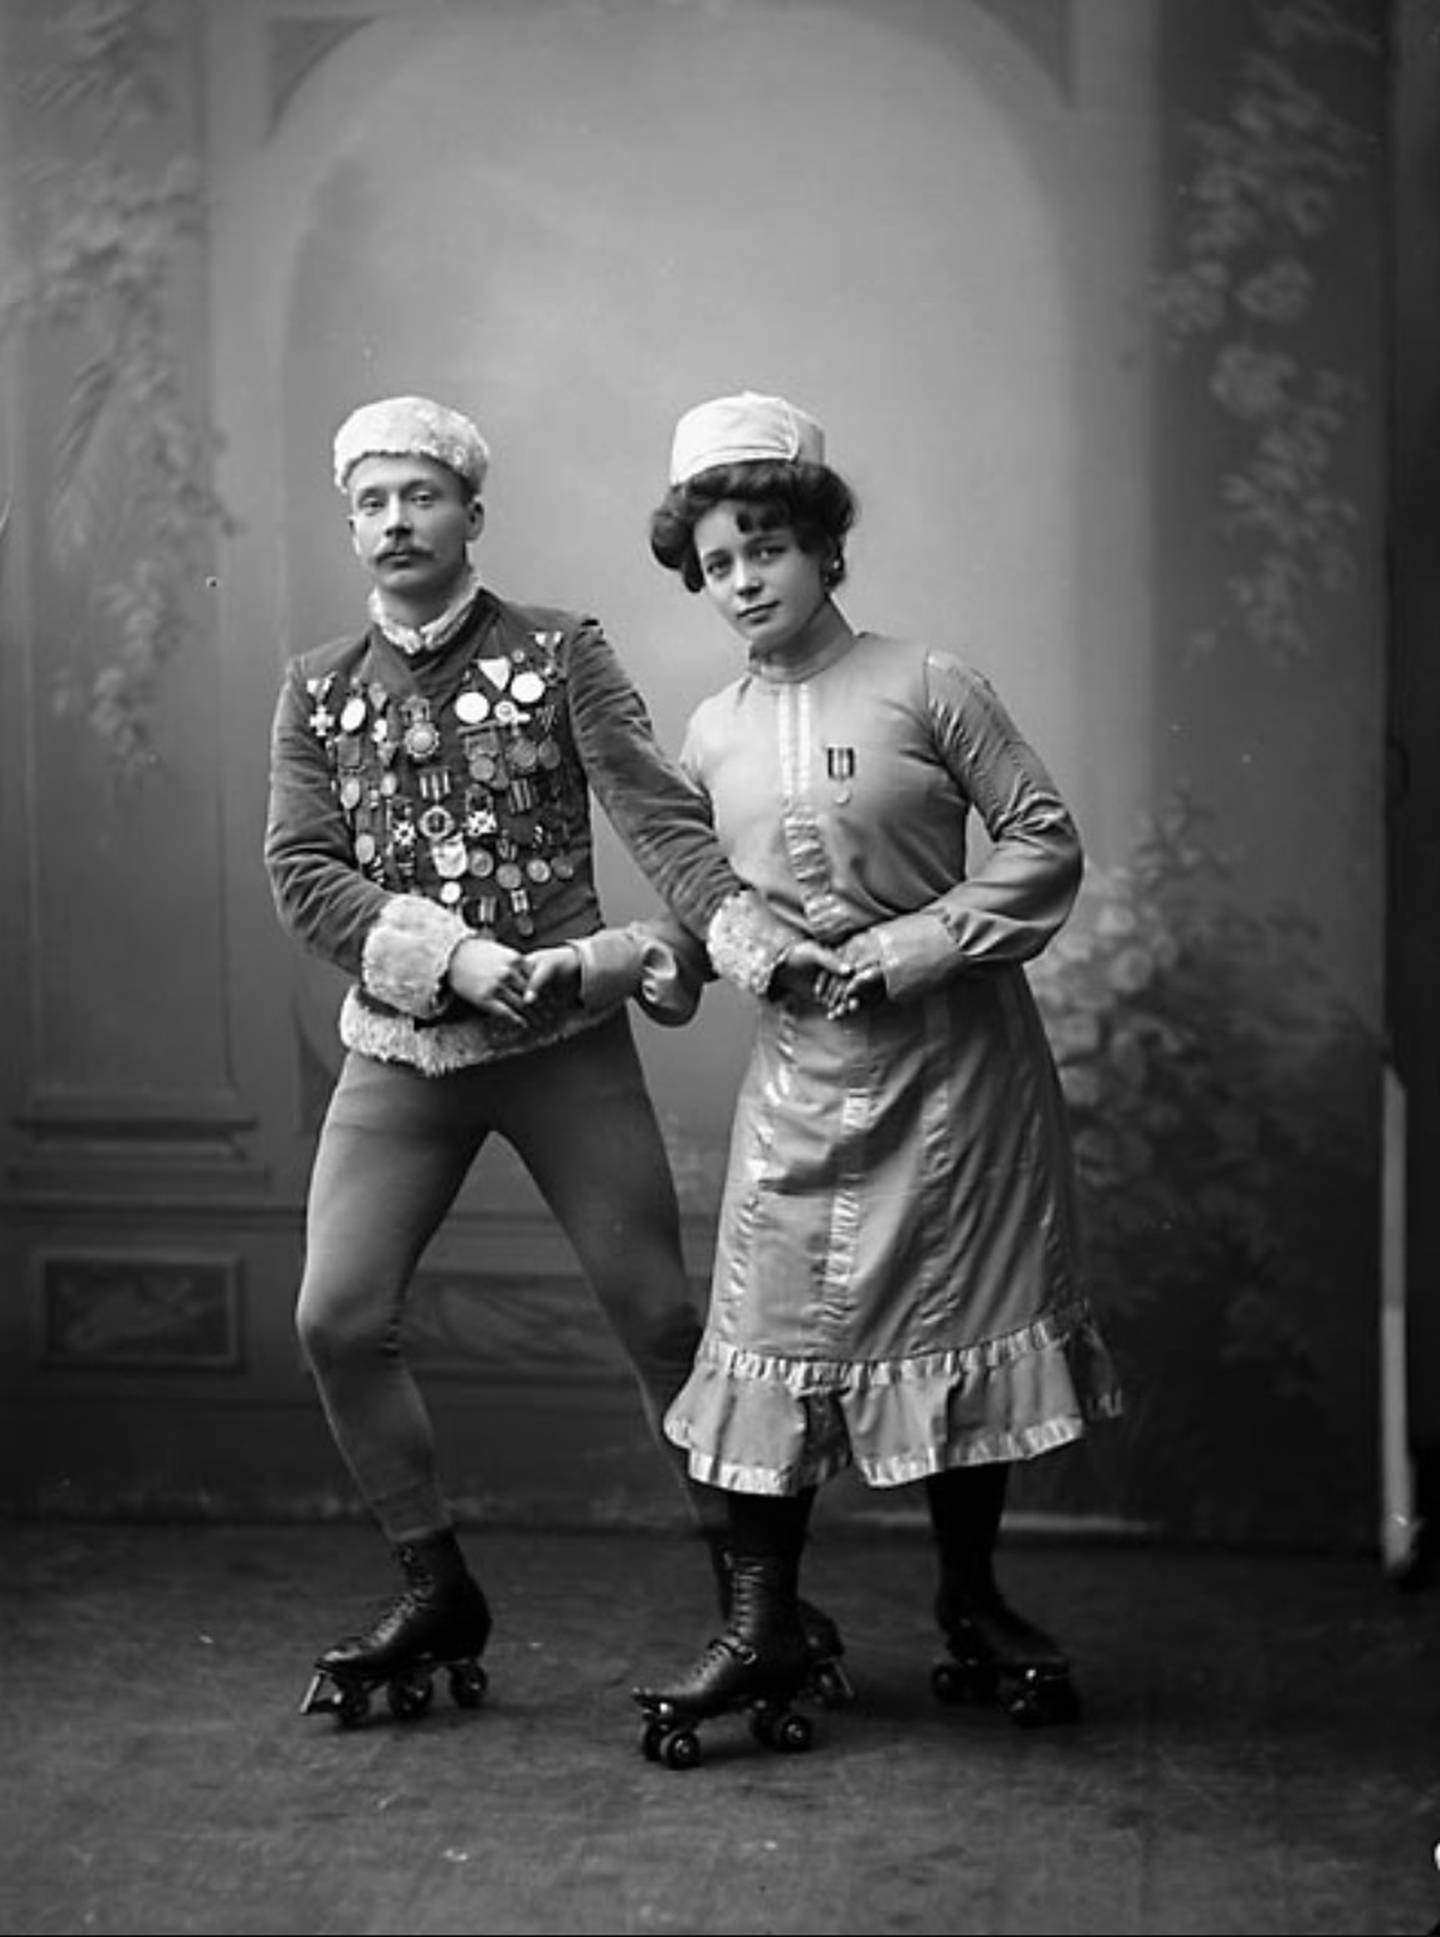 Fra en rulleskøyteoppvisning ved Cirkus du Nord ca 1910.